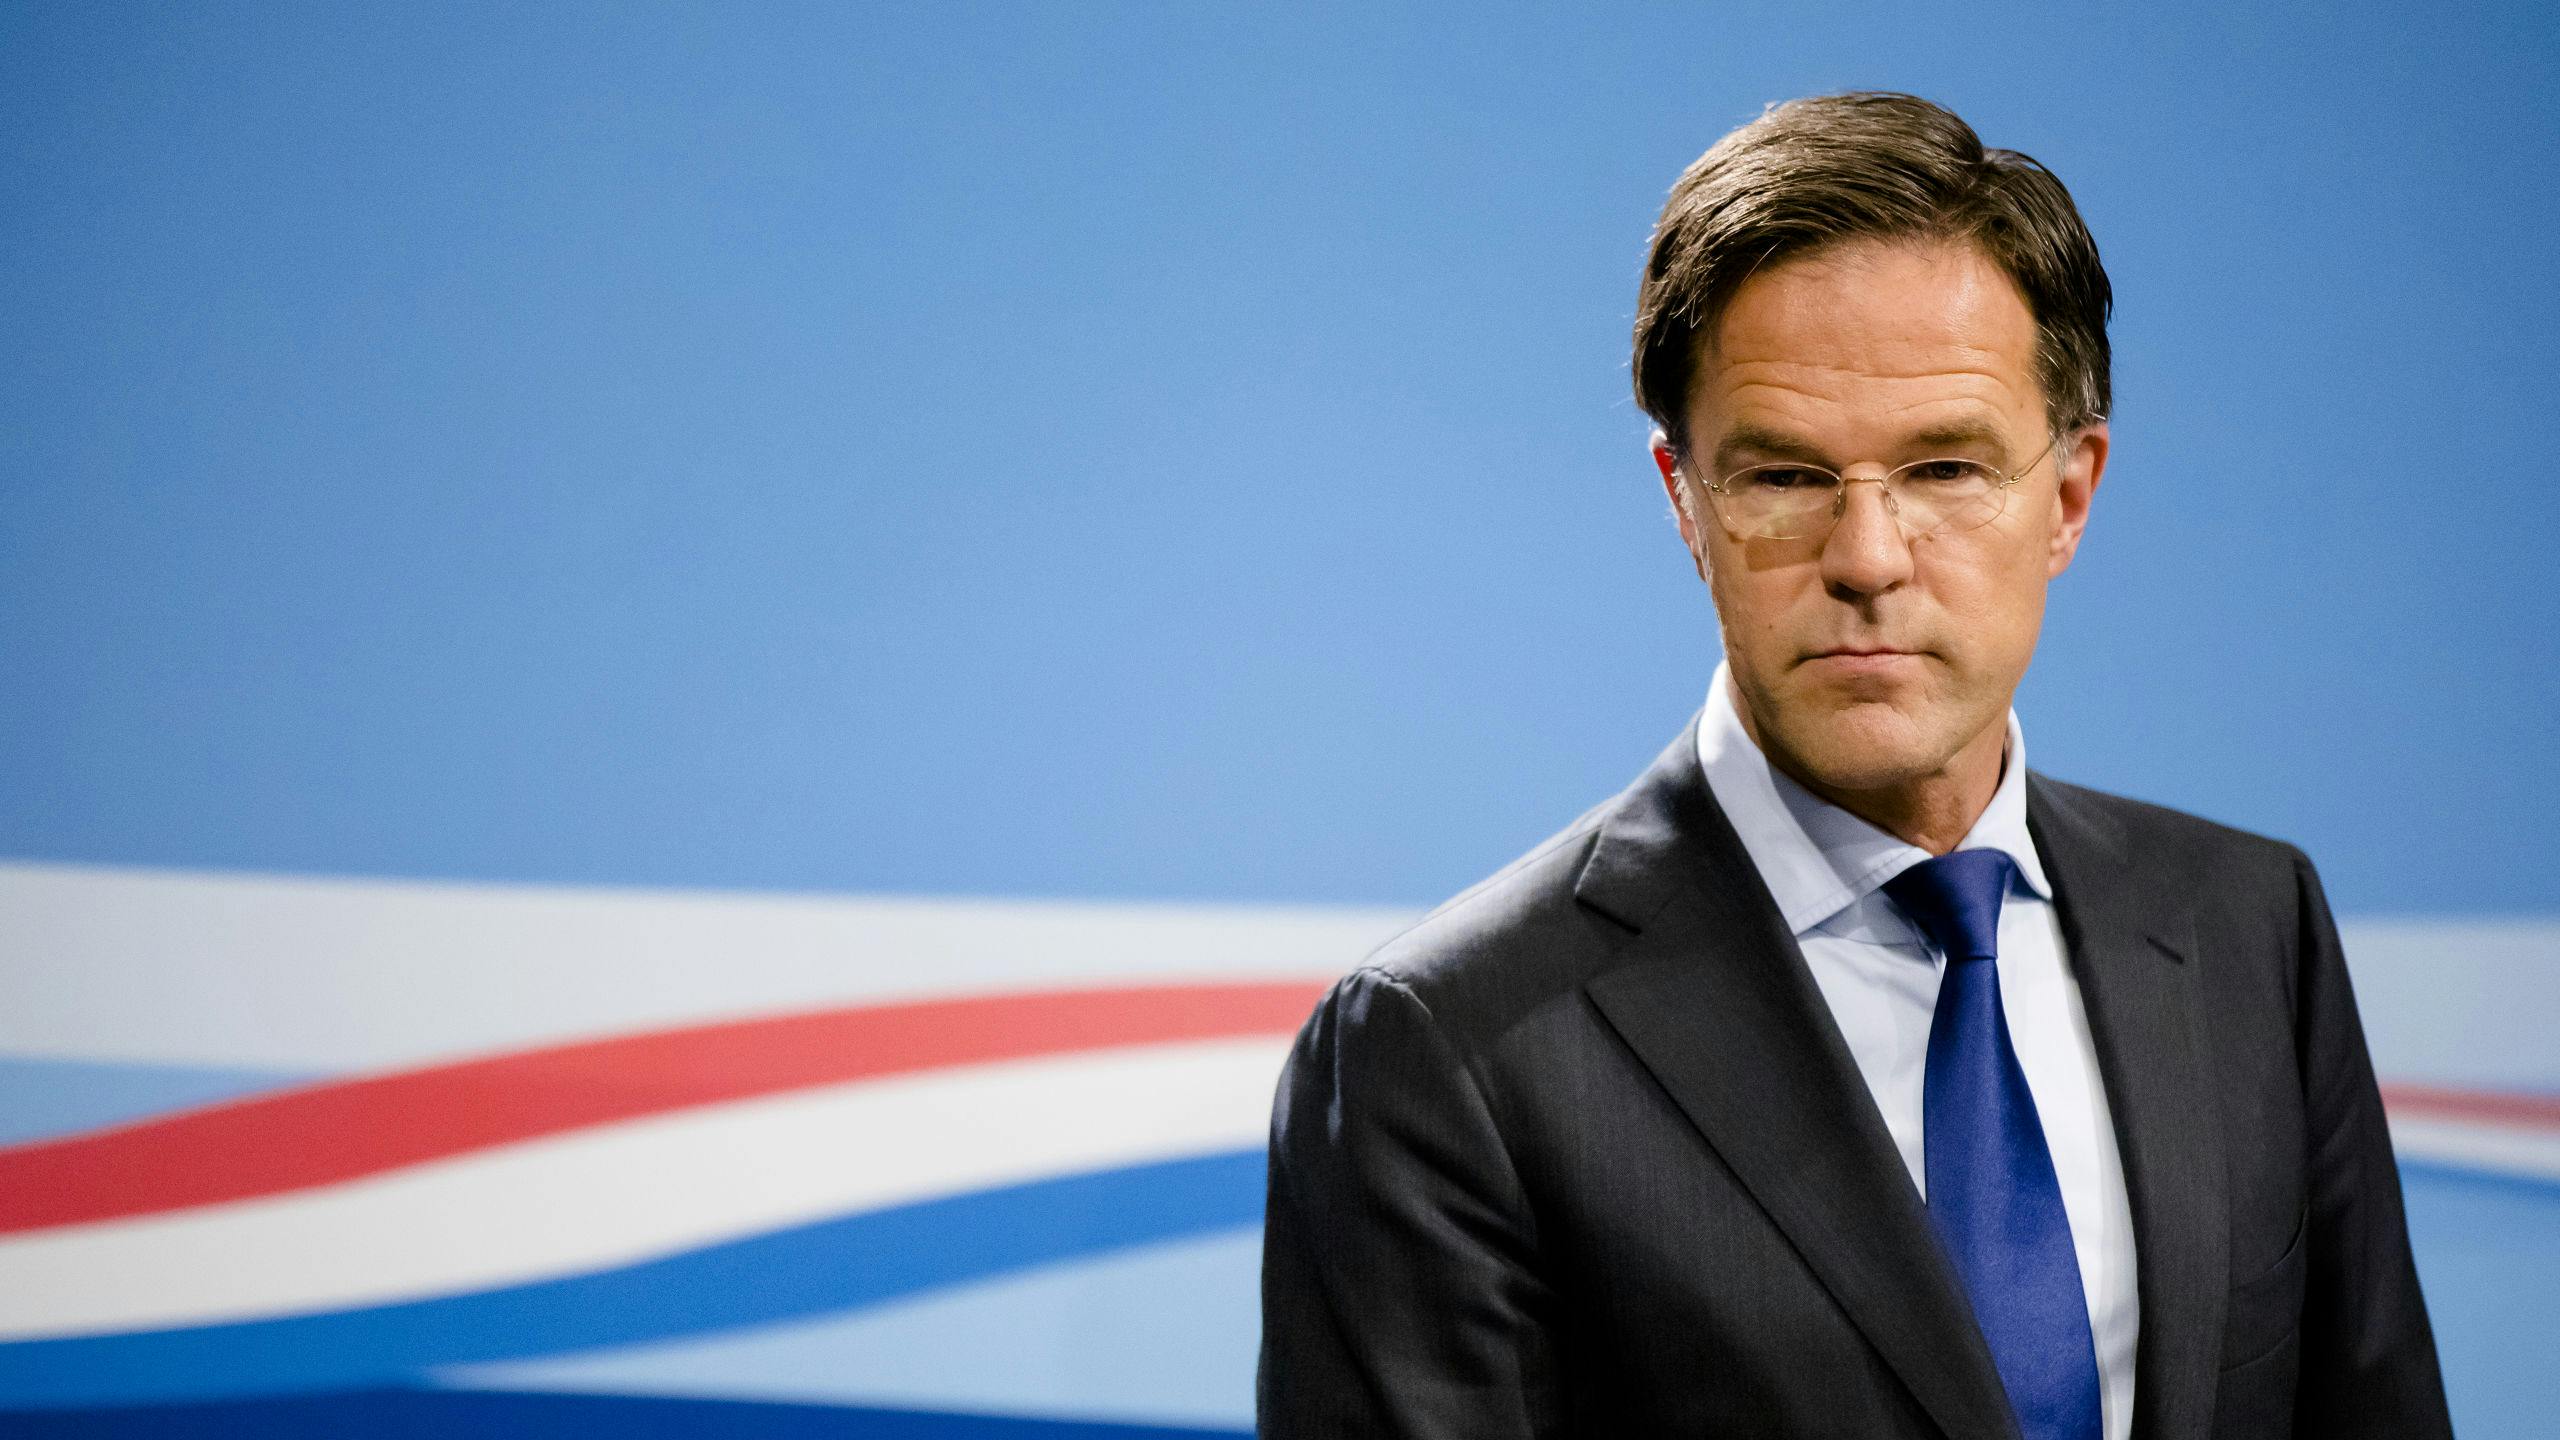 2019-07-12 15:46:23 DEN HAAG - Minister-president Mark Rutte geeft een persconferentie na afloop van de laatste ministerraad voor het zomerreces. ANP BART MAAT